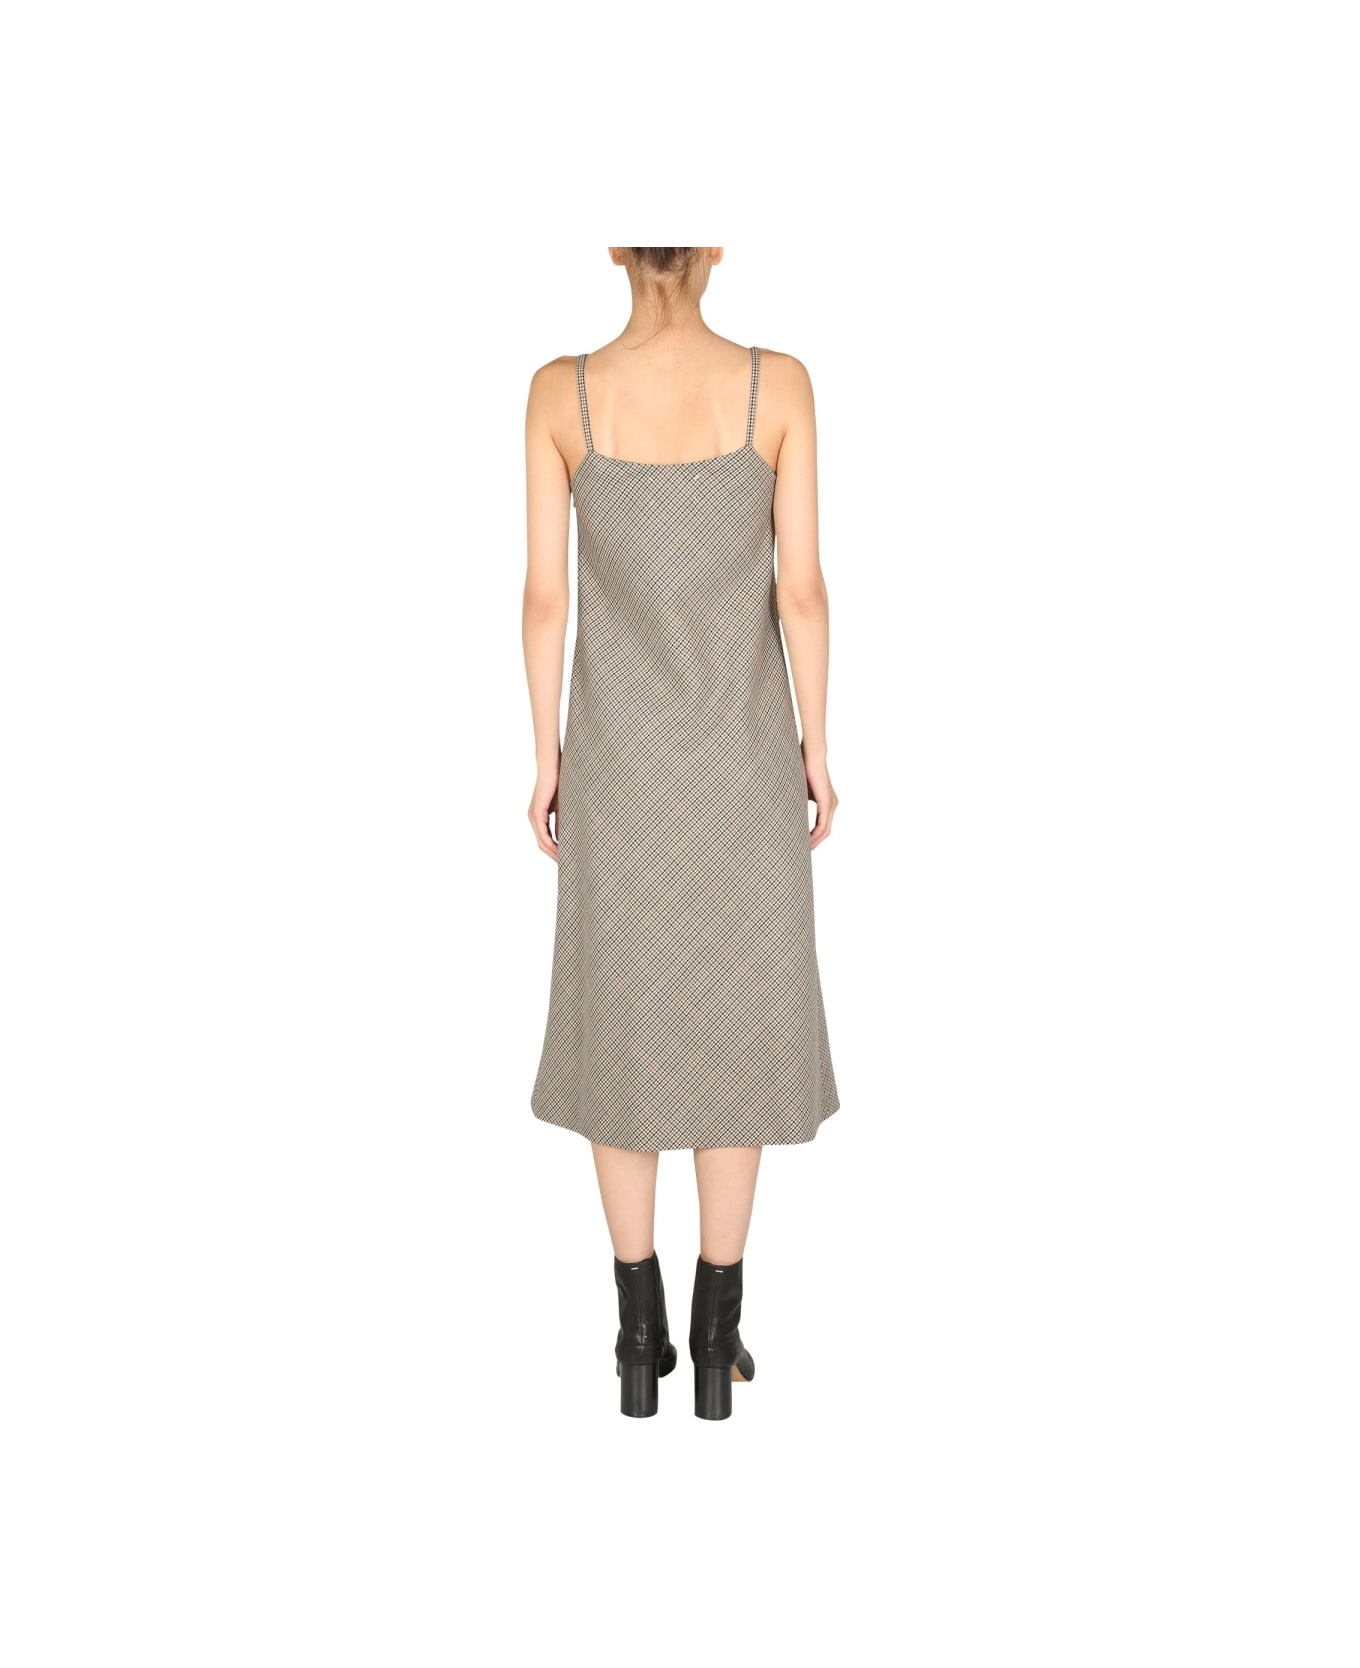 Maison Margiela Dress With Pied De Poule Pattern - BROWN